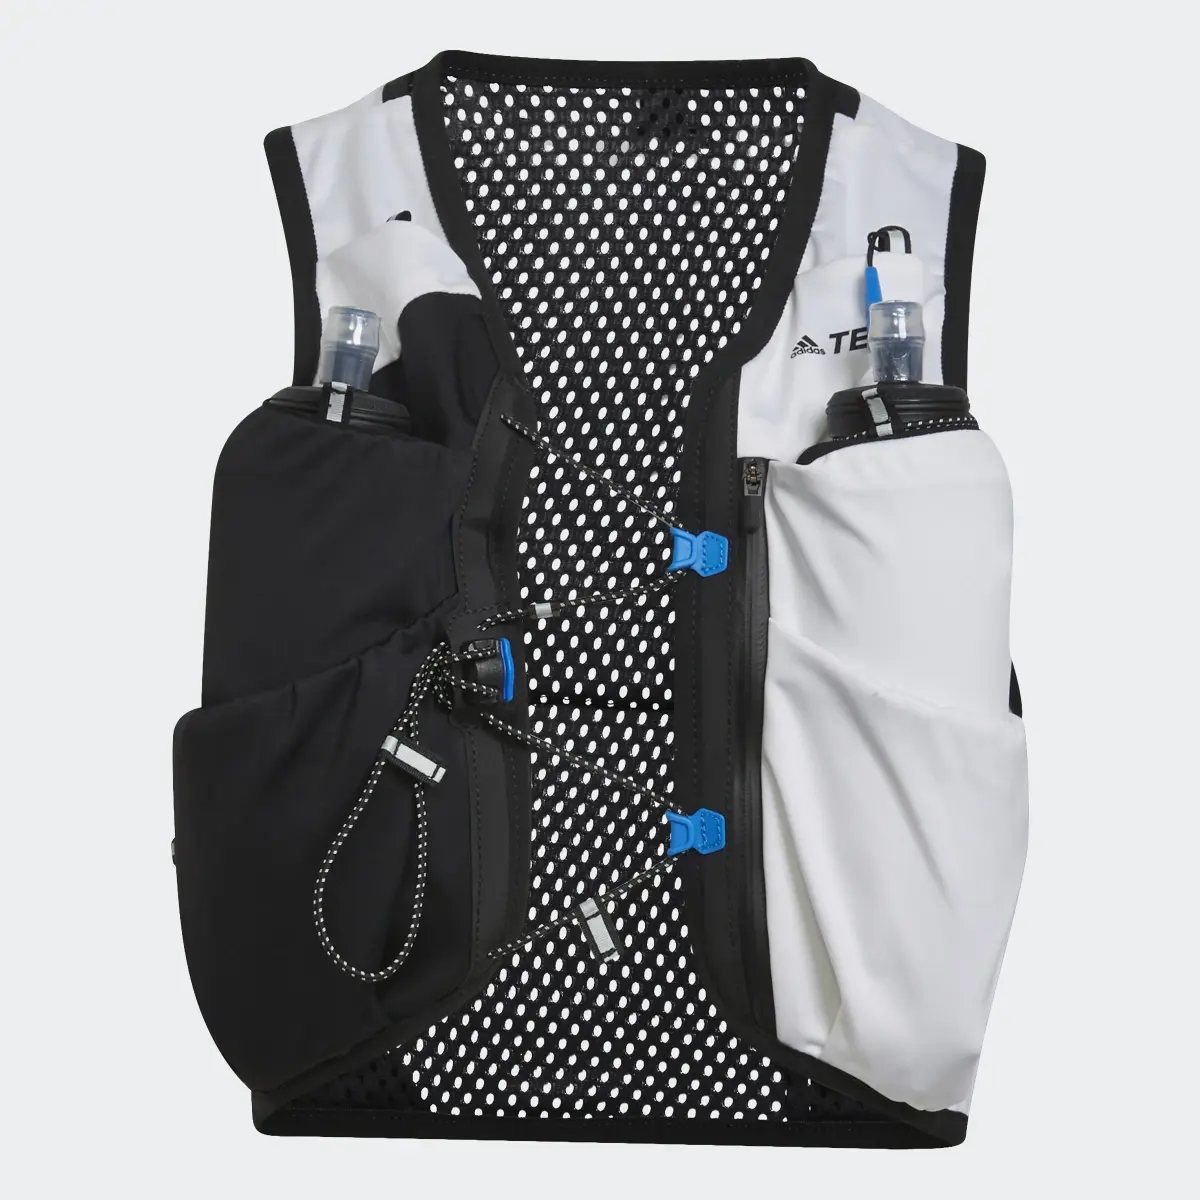 Adidas Terrex Trail Running Vest. 1